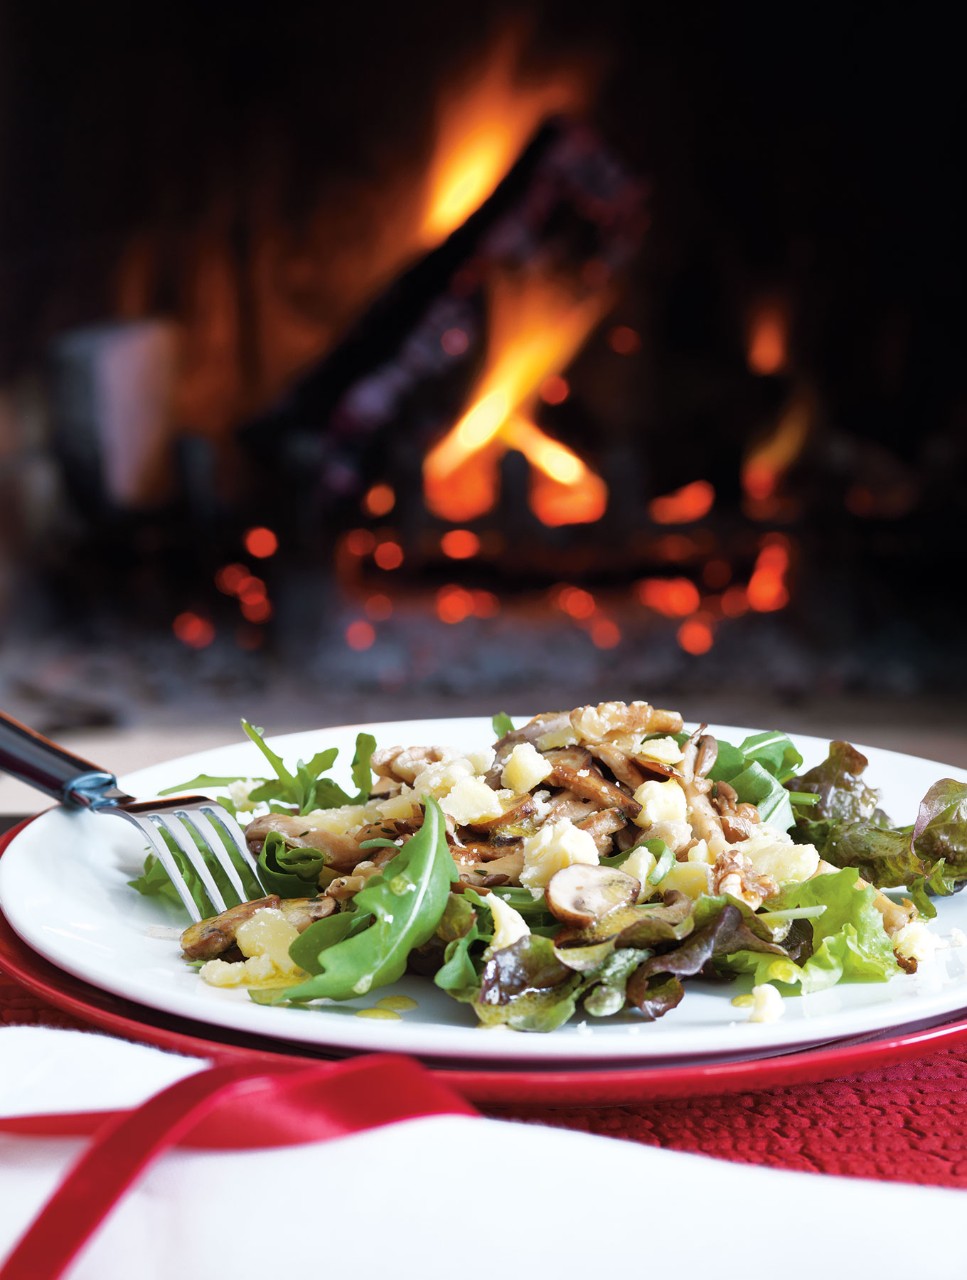 Warm Mushroom Salad with Aged Cheddar and Walnuts